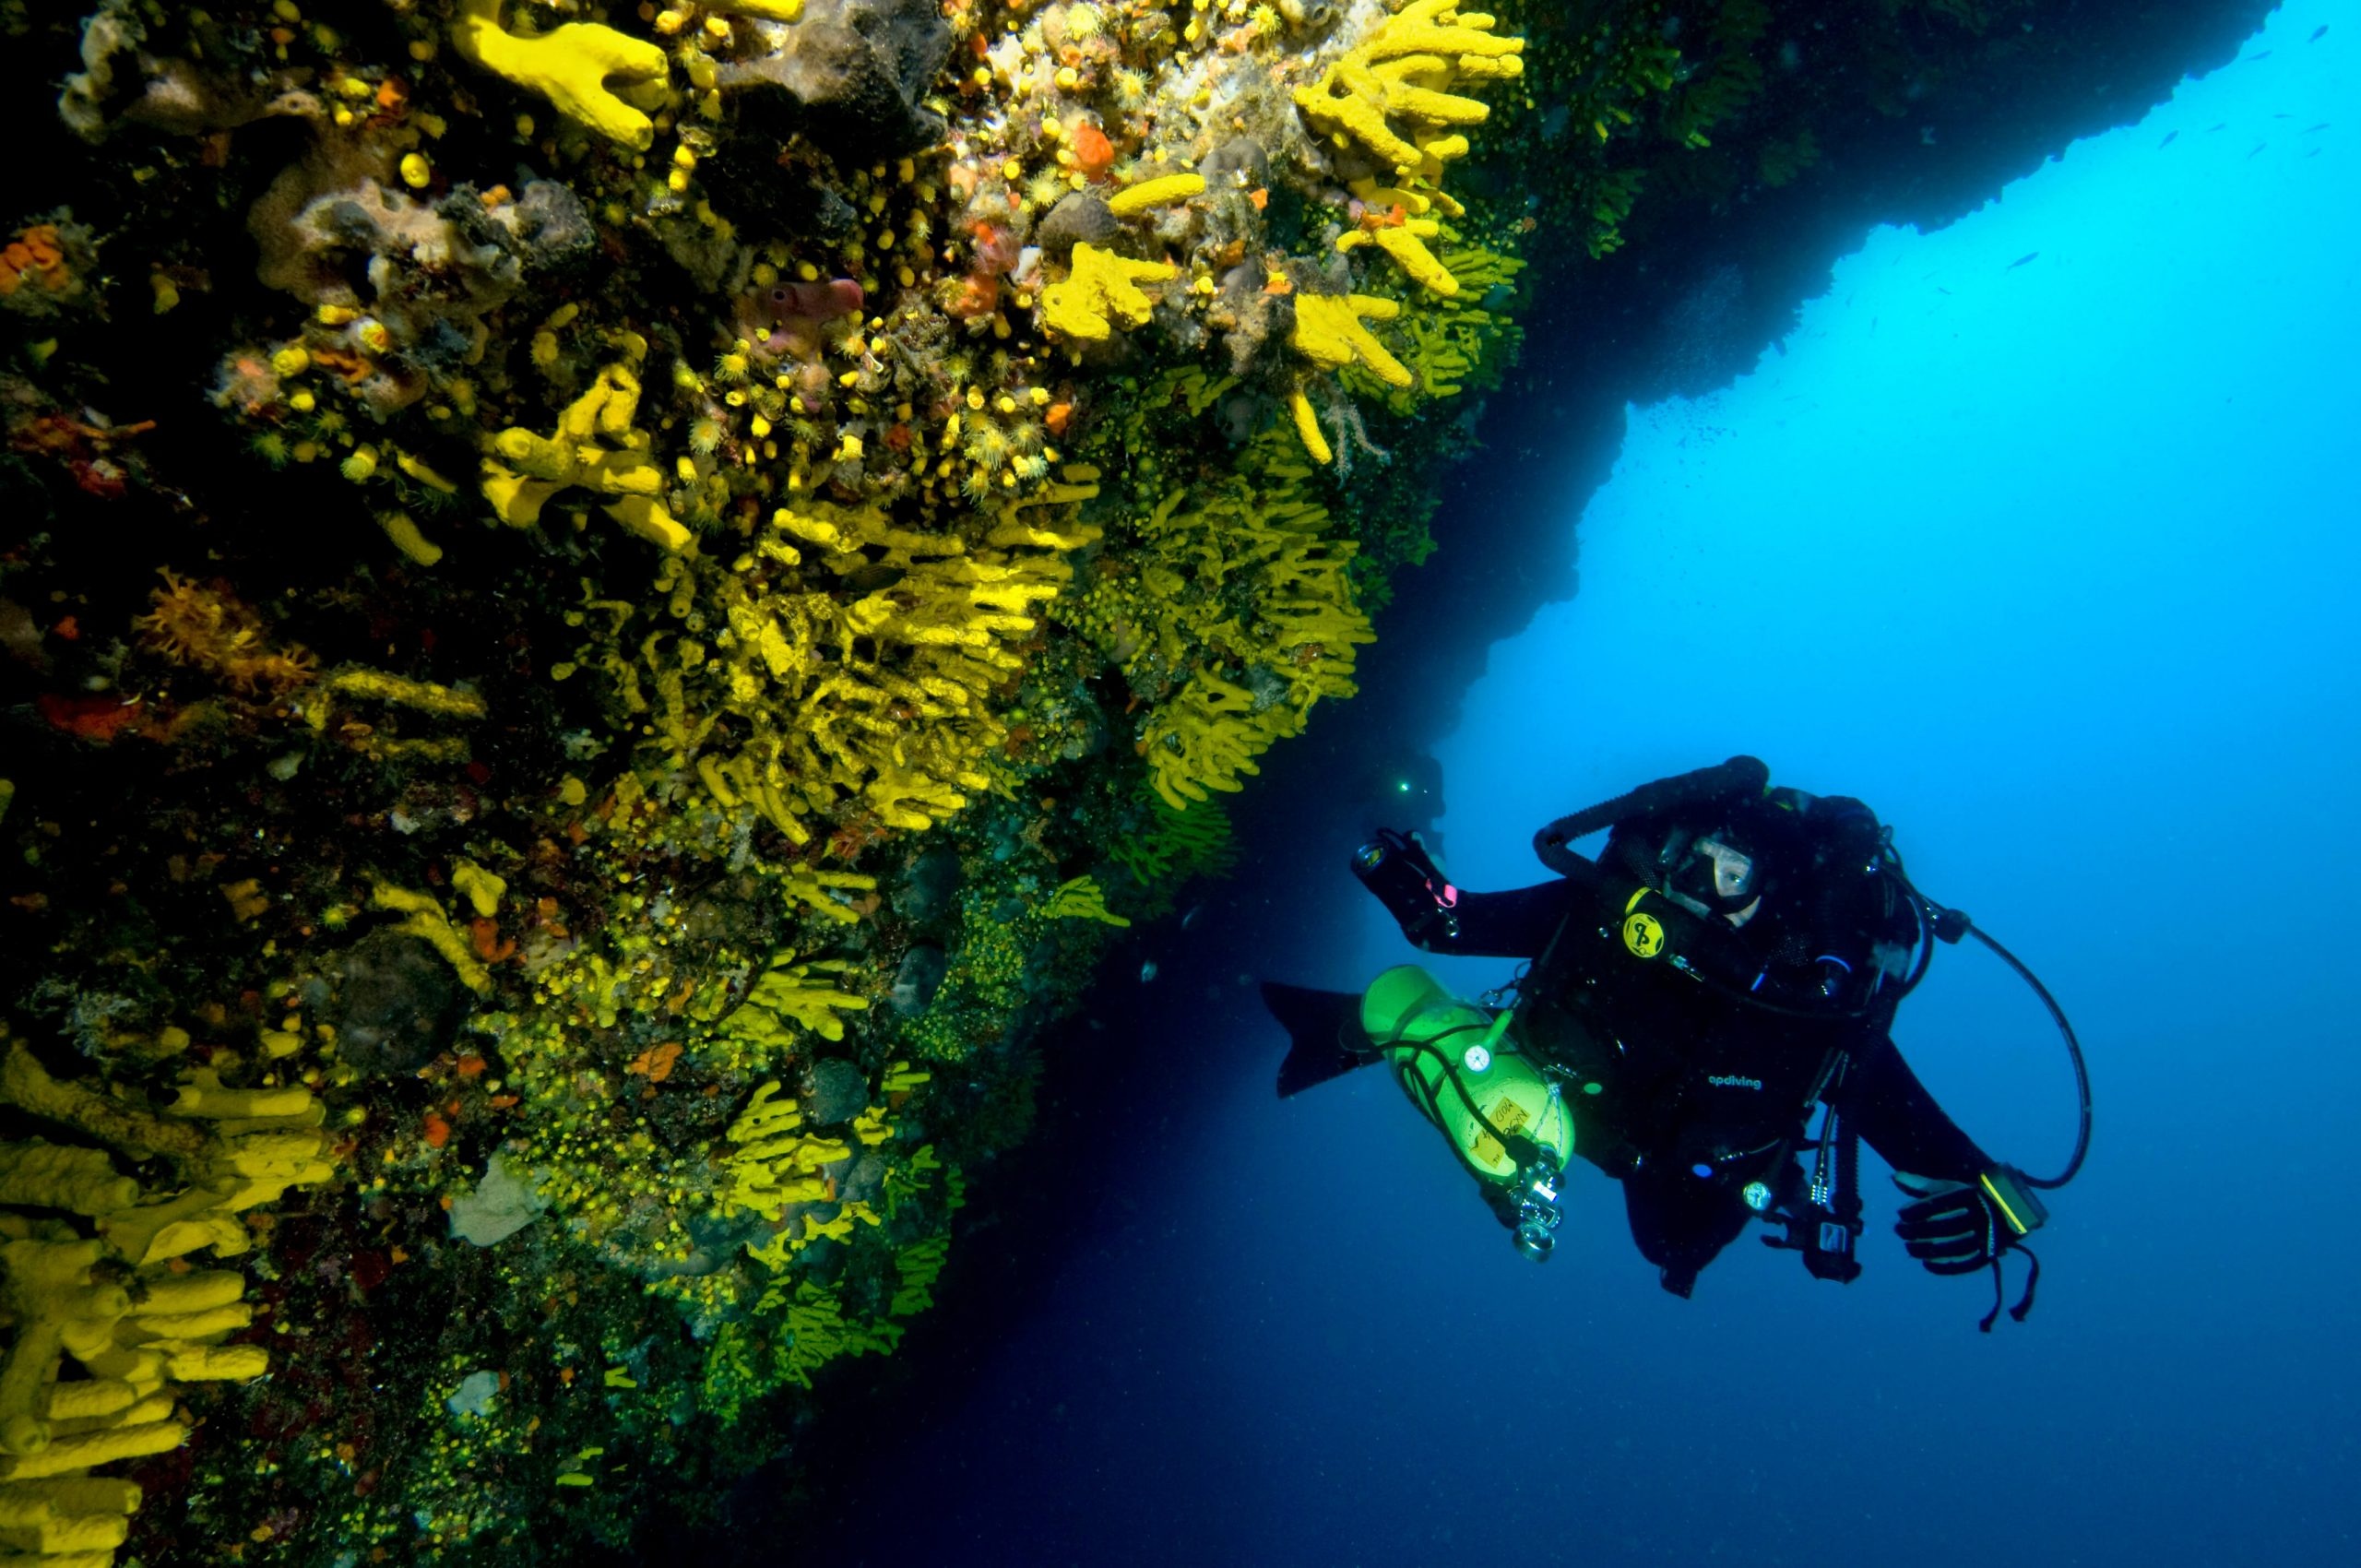 Diving: A deep-sea reef exploration performed by a professional scuba diver. 2560x1700 HD Wallpaper.